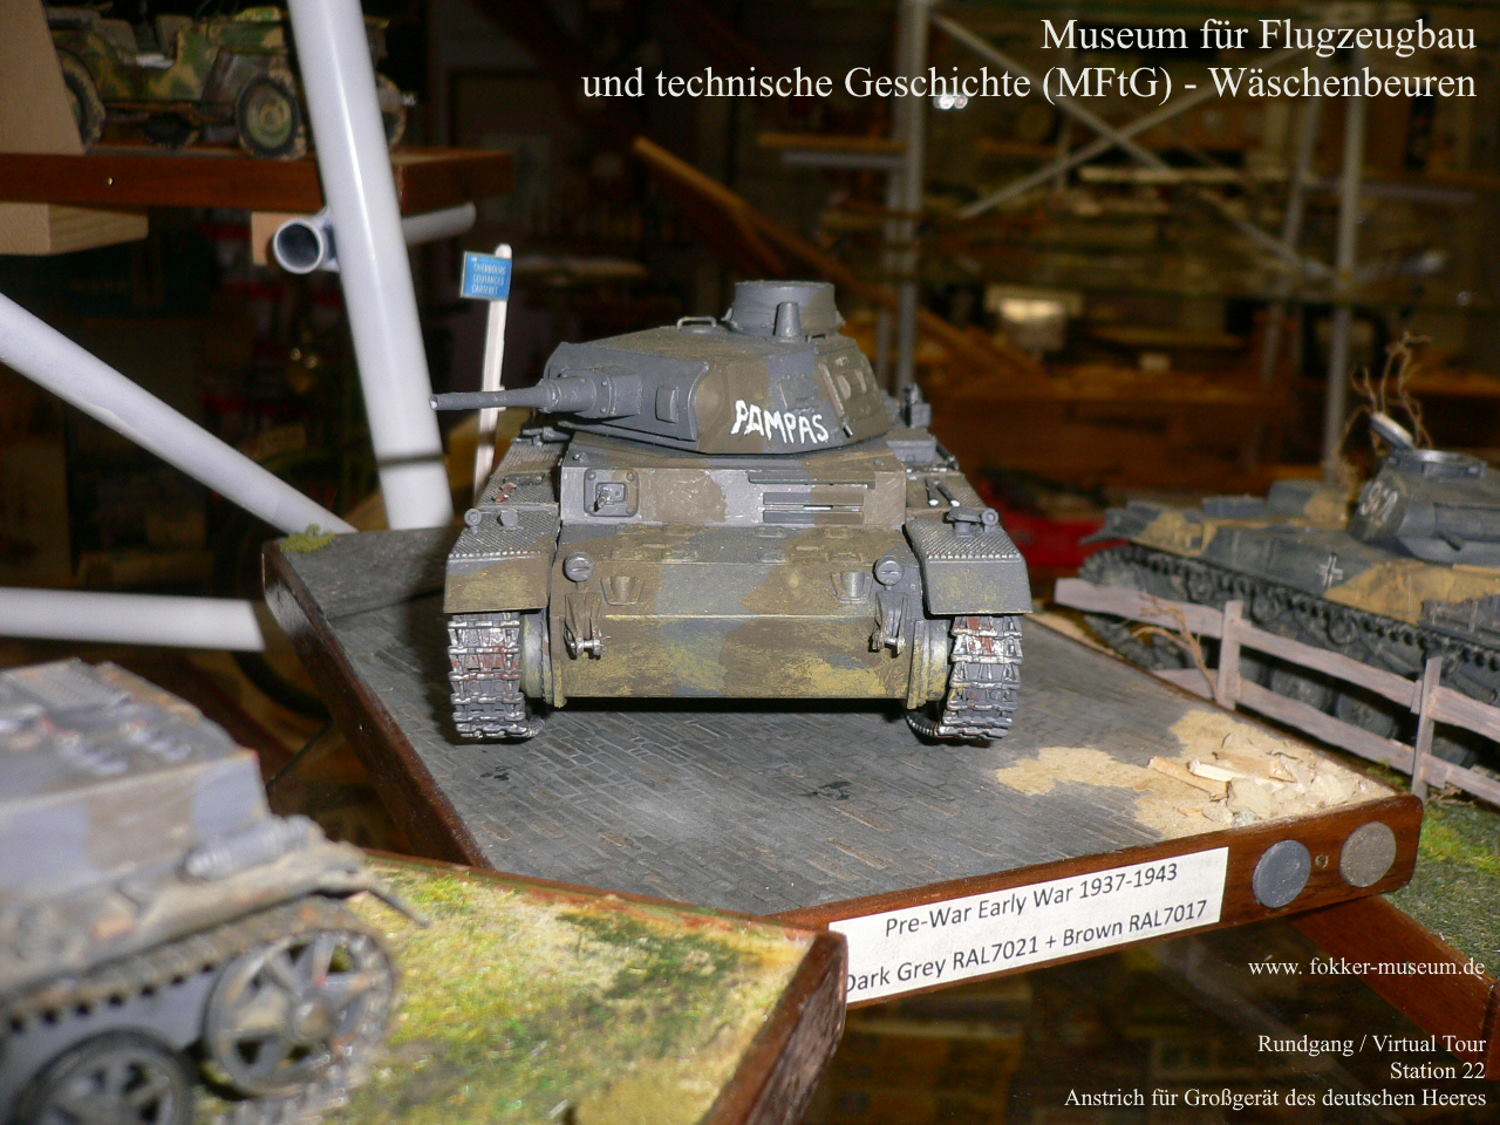 Museum für Flugzeugbau und technische Geschichte - Station 22 Anstrich für Großgerät des deutschen Heeres